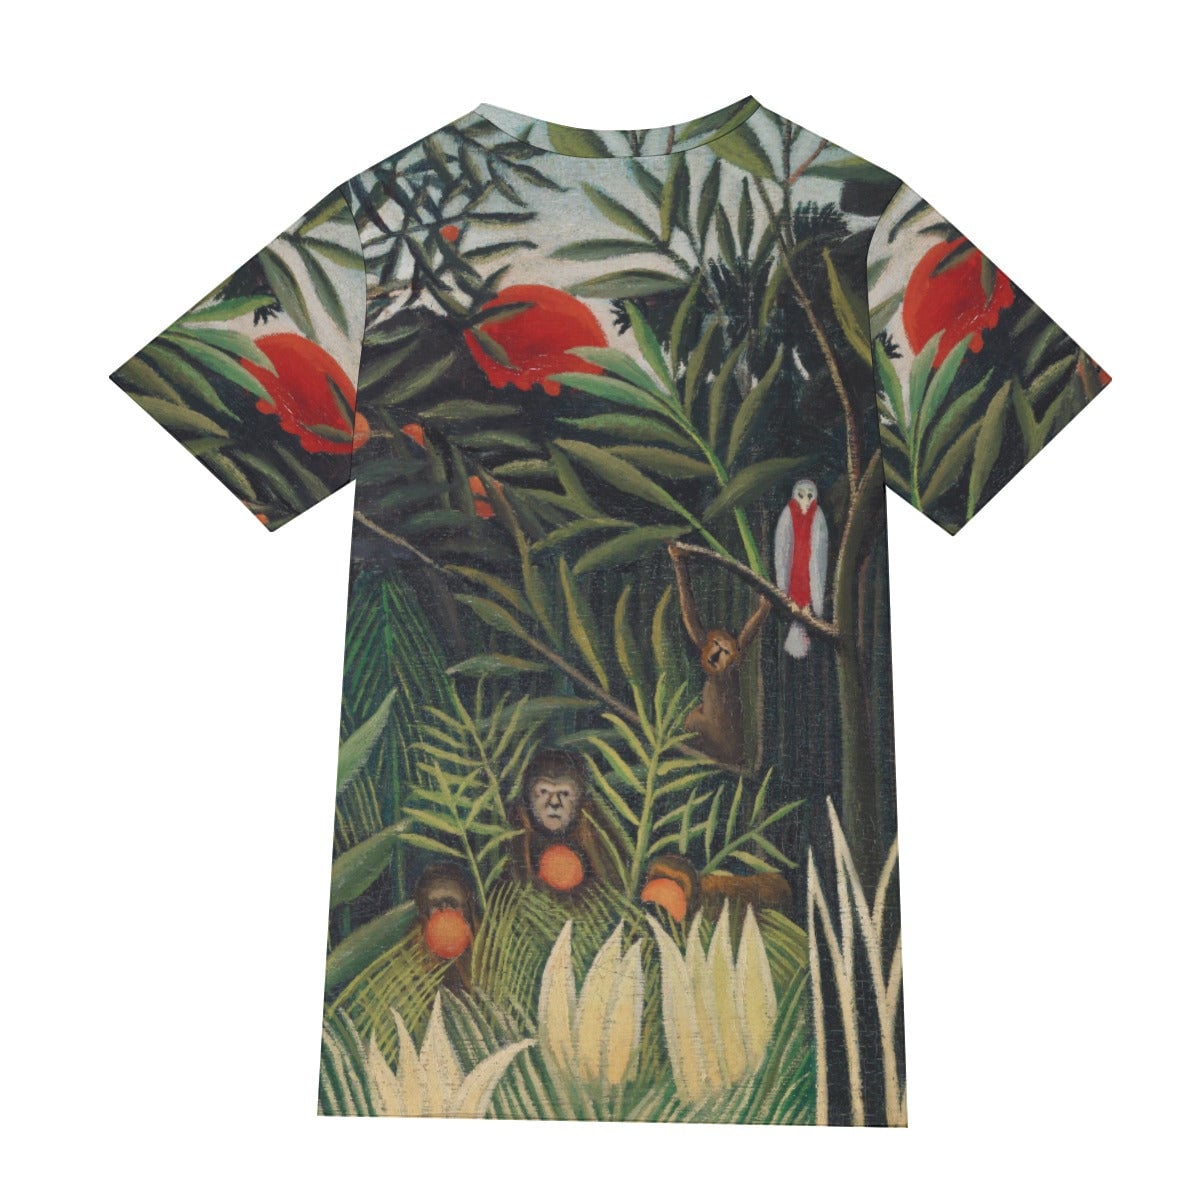 Henri Rousseau’s Monkeys and Parrot T-Shirt - Famous Art Tee